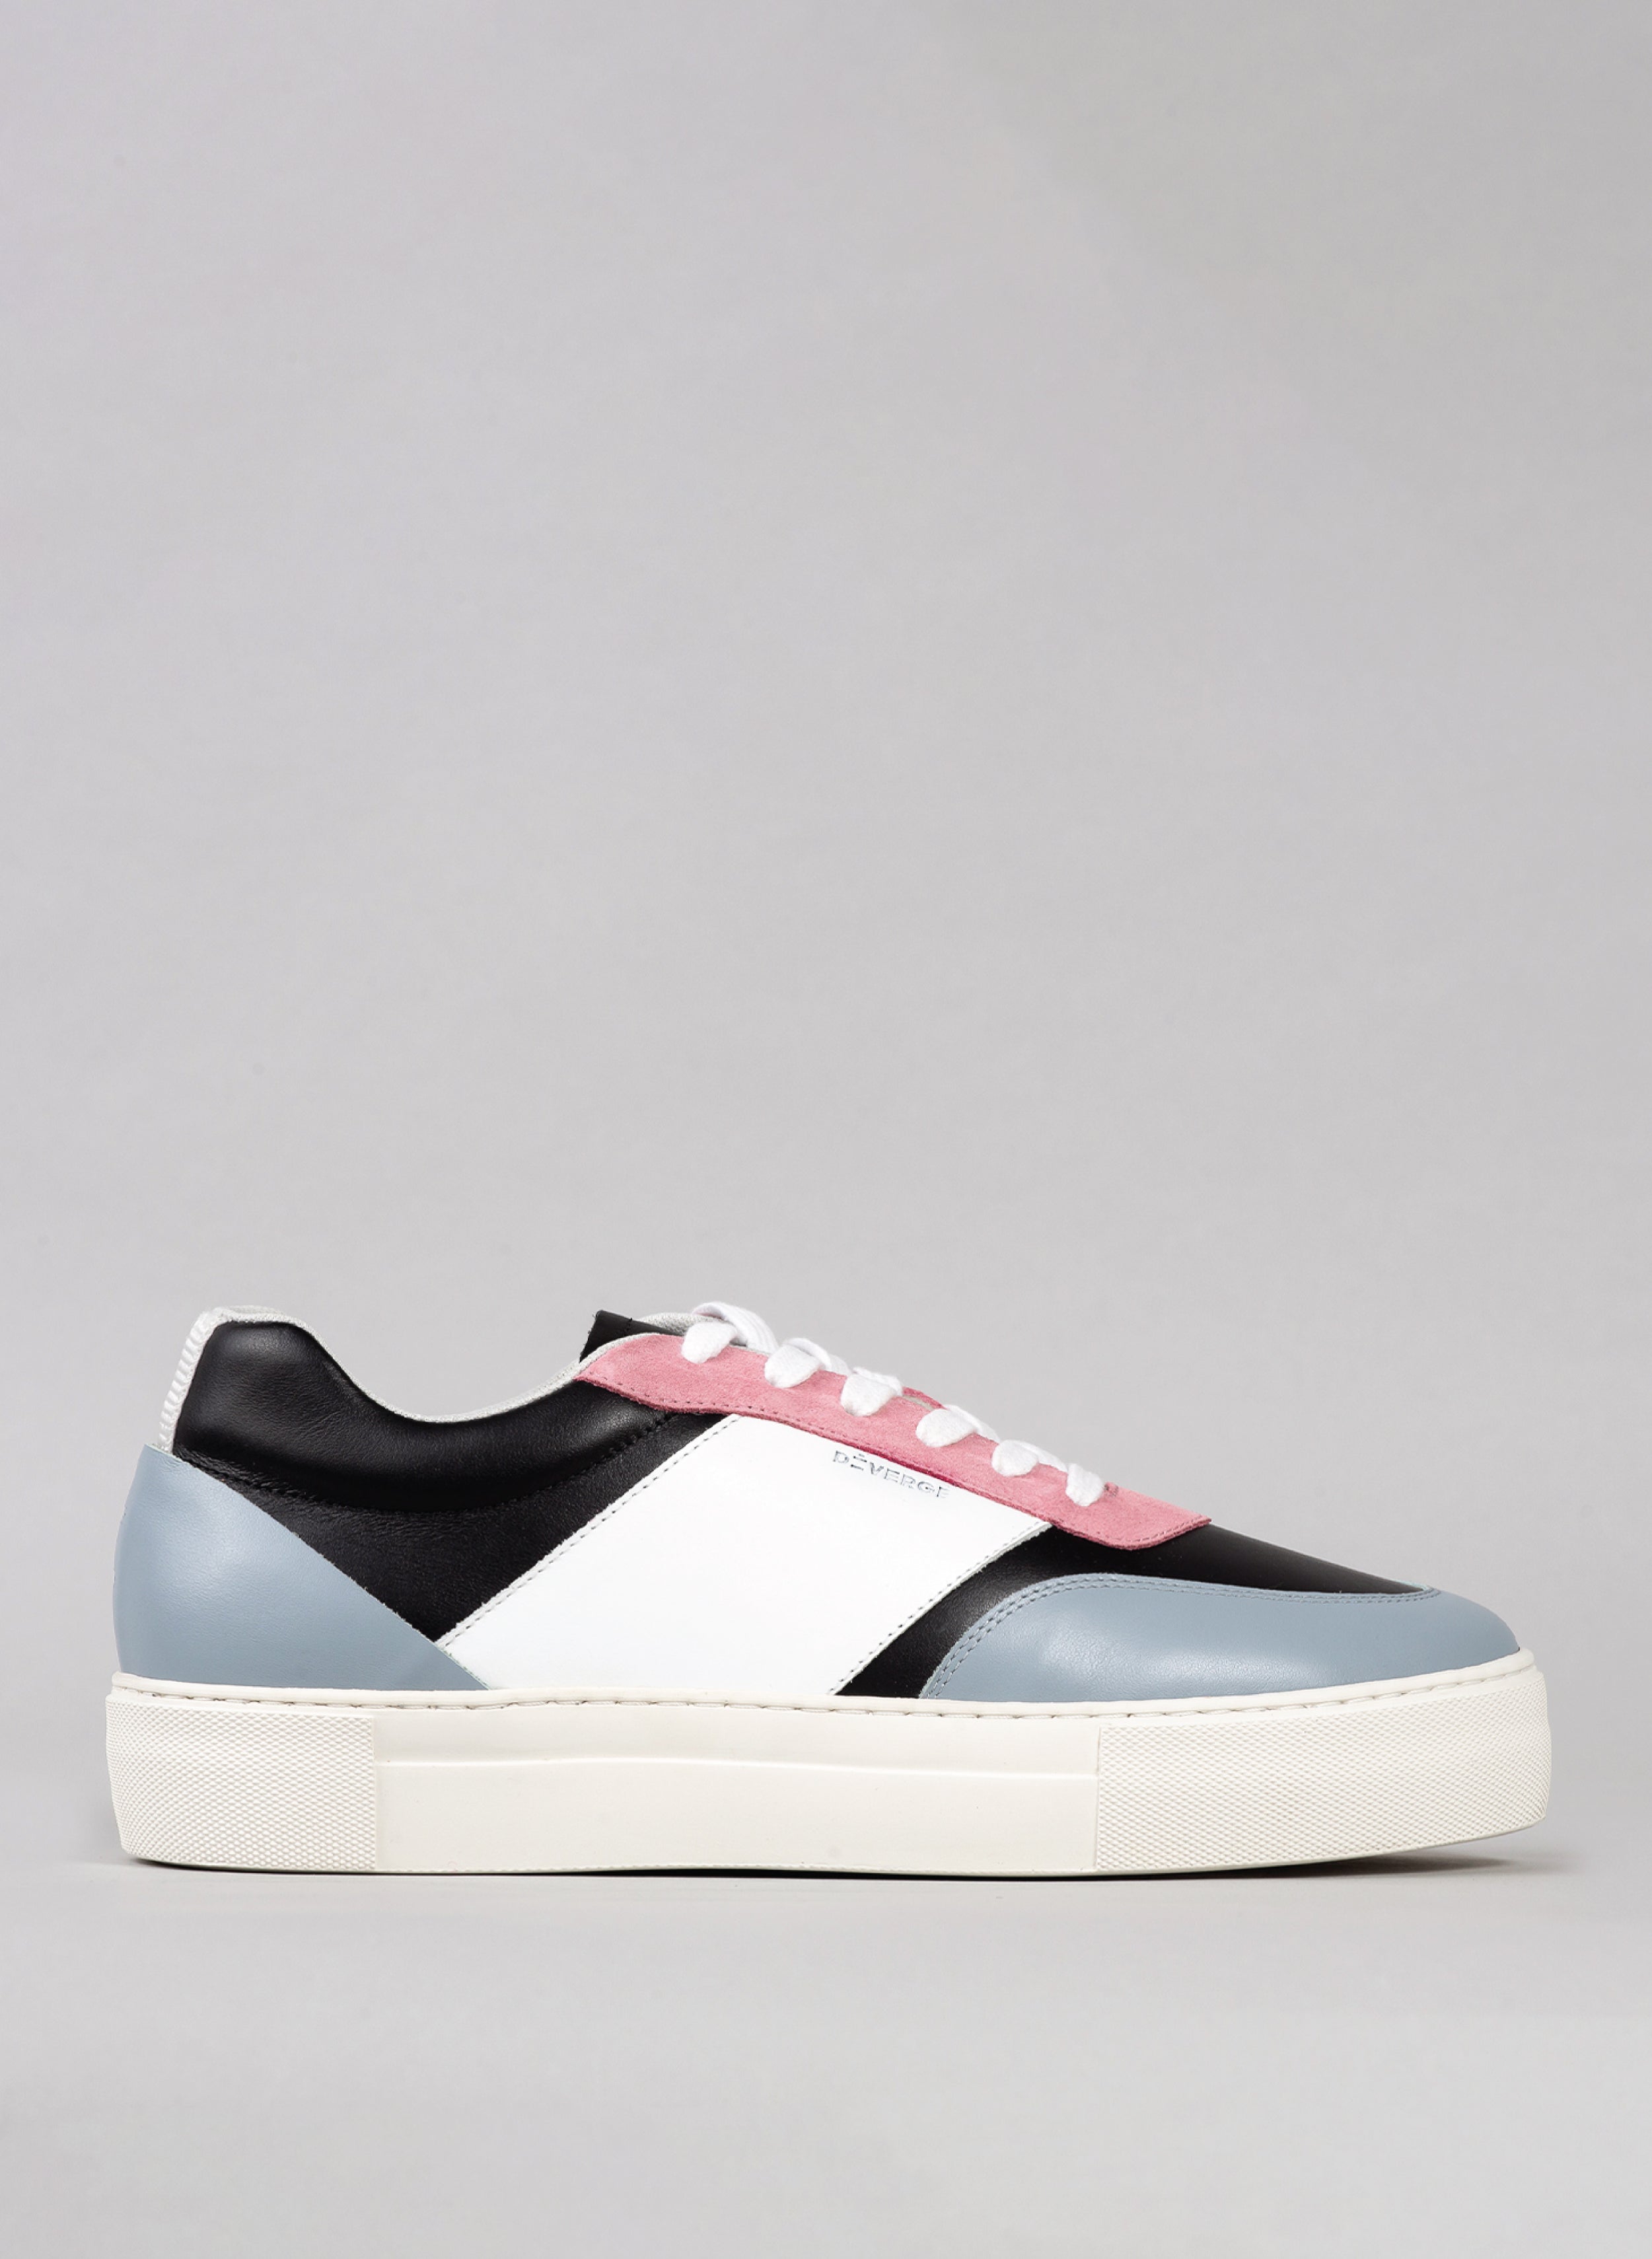 artic, schwarzes und rosafarbenes Premium-Leder sneakers im zeitgenössischen Design Seitenansicht